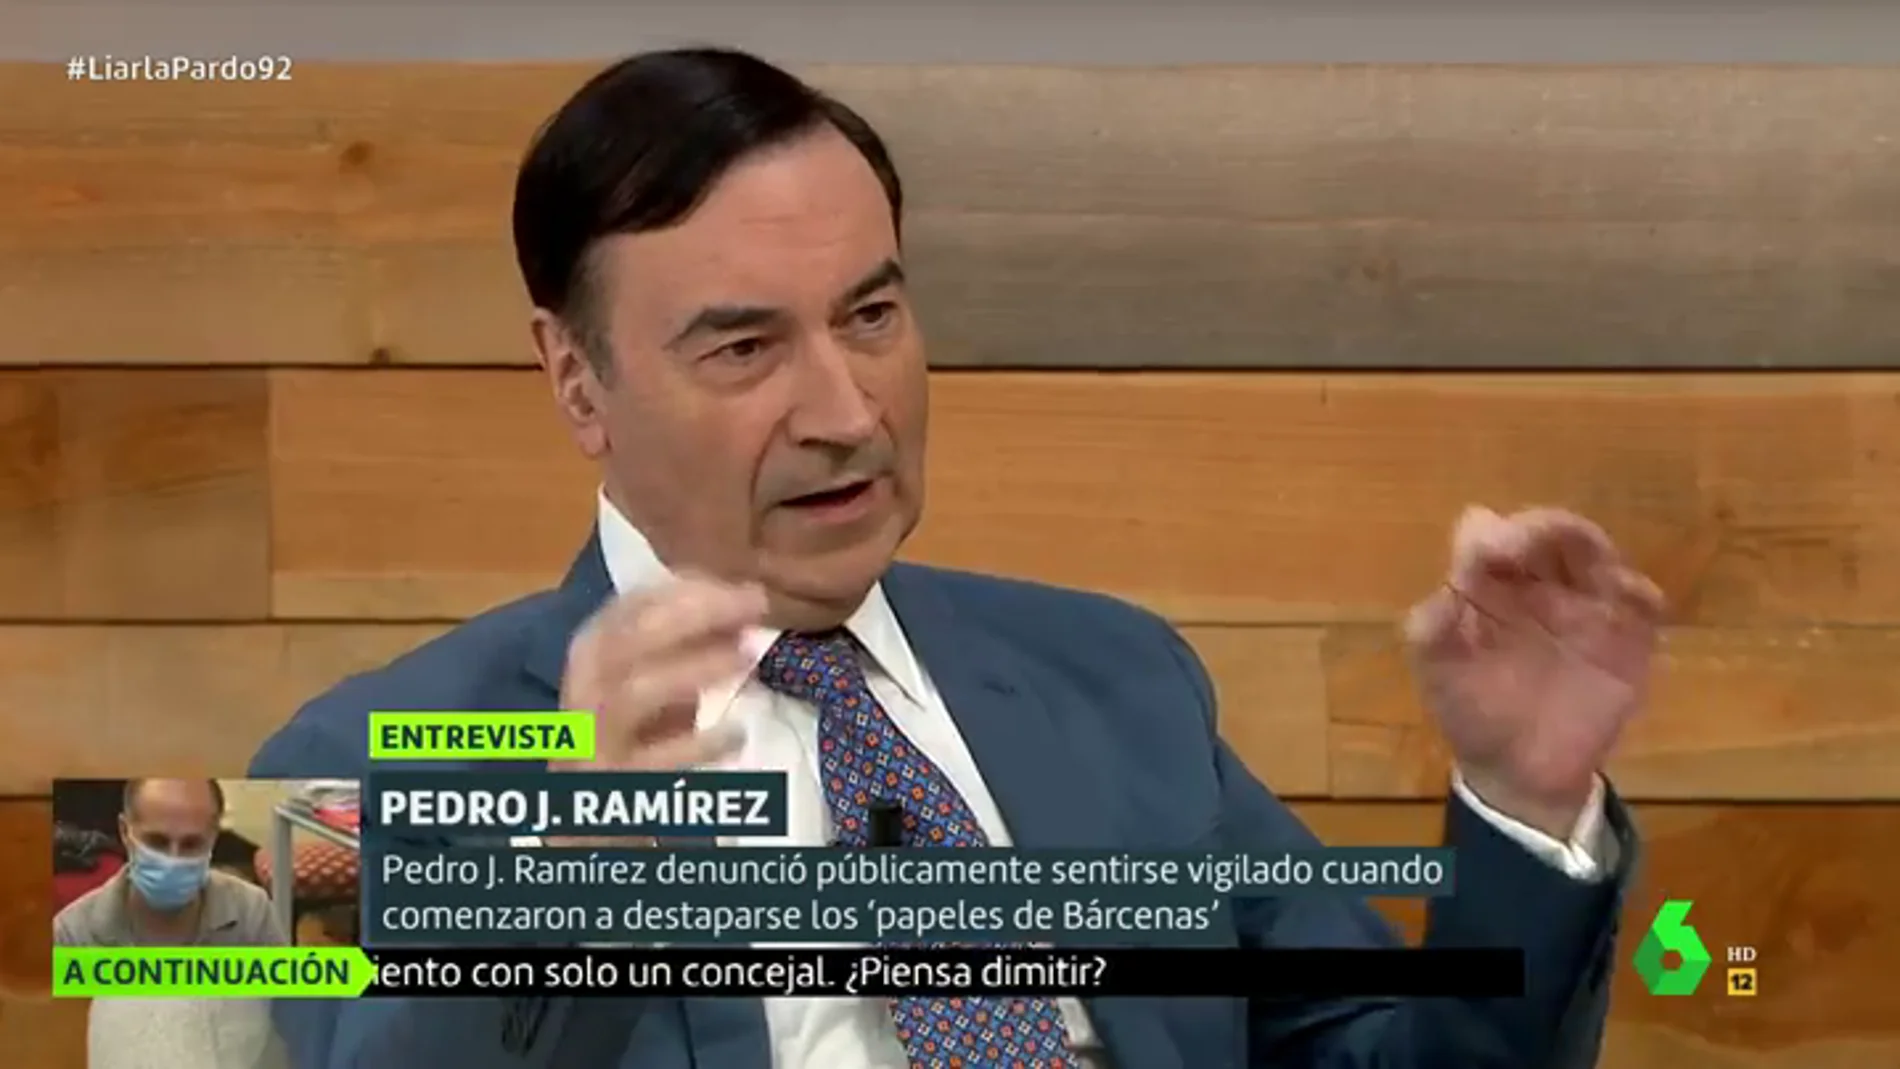 Pedro J. Ramírez, en Liarla Pardo: “La 'operación Kitchen' es el Watergate de Mariano Rajoy”